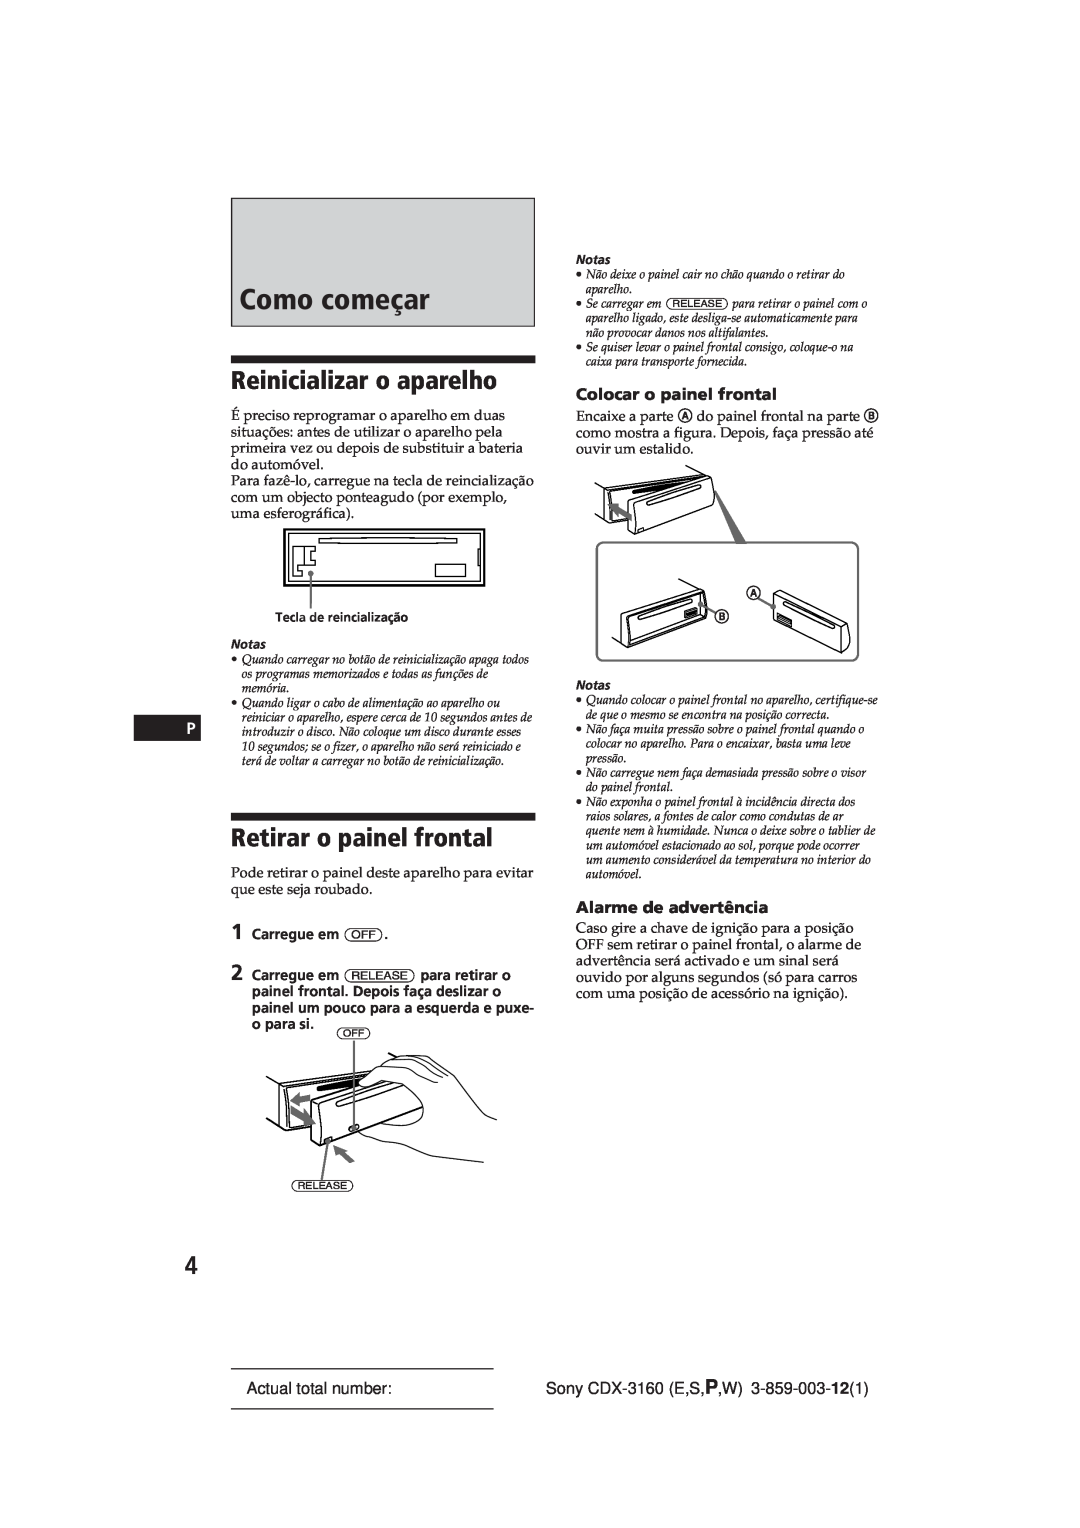 Sony CDX-3160 manual Como começar, Reinicializar o aparelho, Retirar o painel frontal, Colocar o painel frontal 